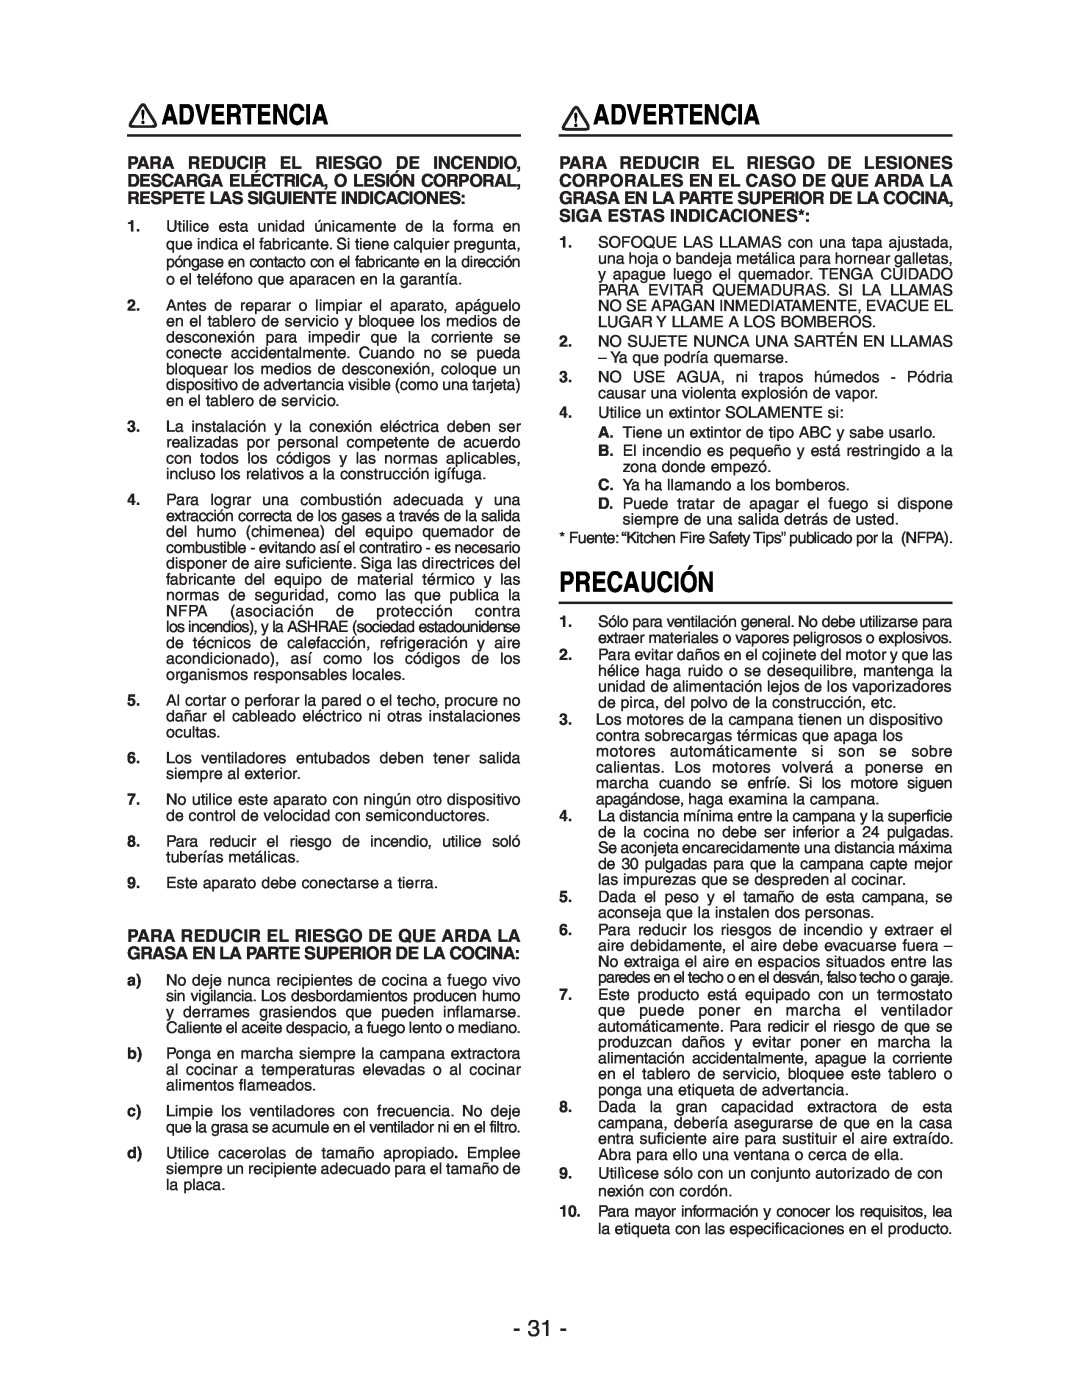 Broan Model E662 installation instructions Advertencia, Precaución 